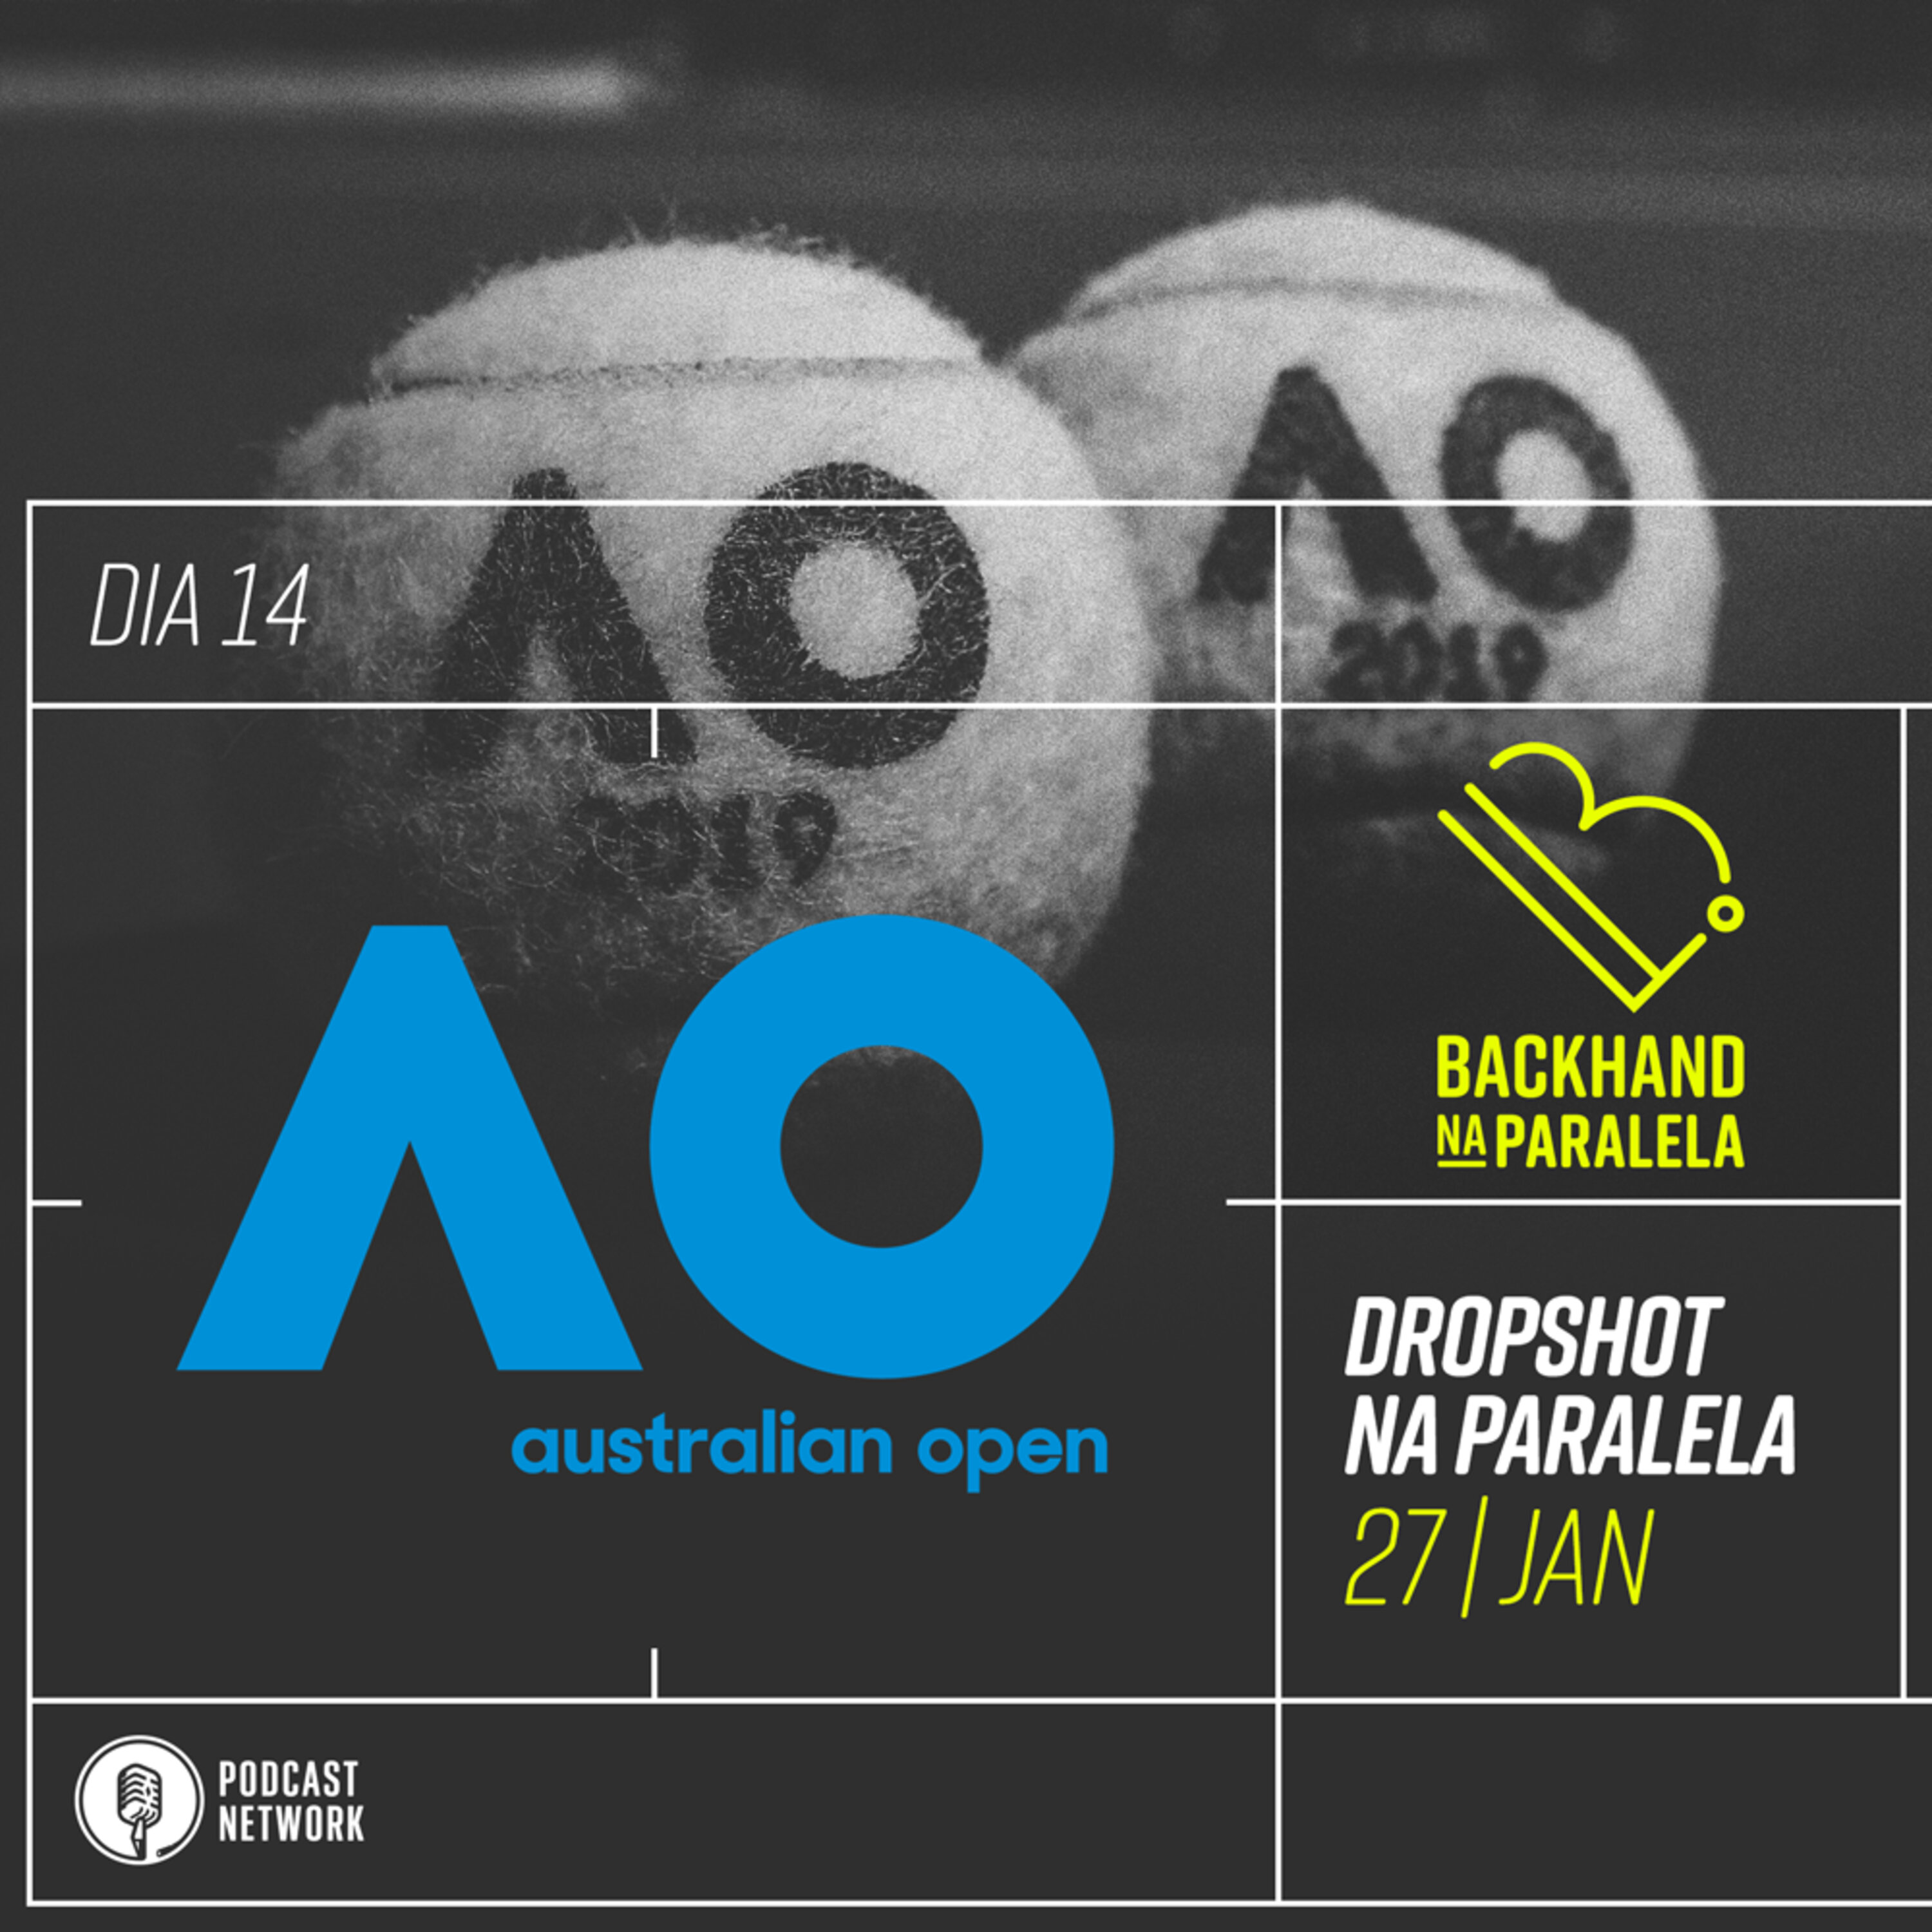 Australian Open 2019 – Dia 14 – DJOKOSMASH